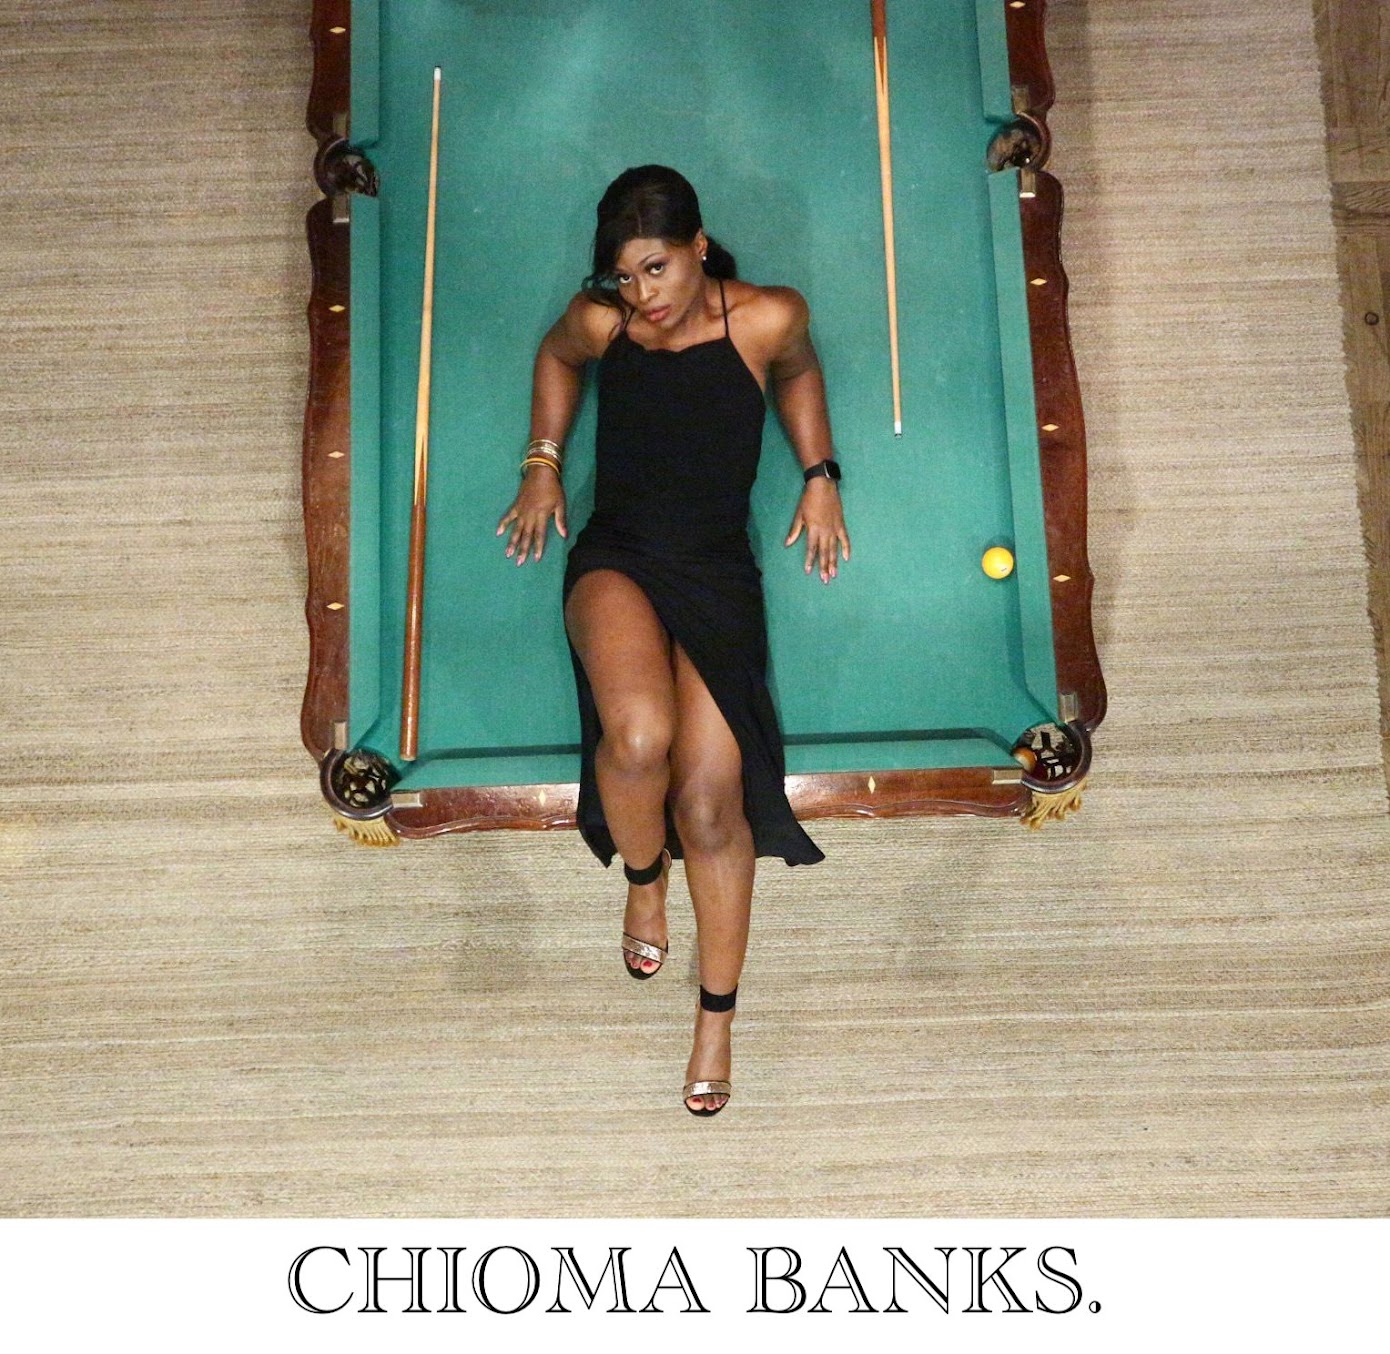                       CHIOMA BANKS